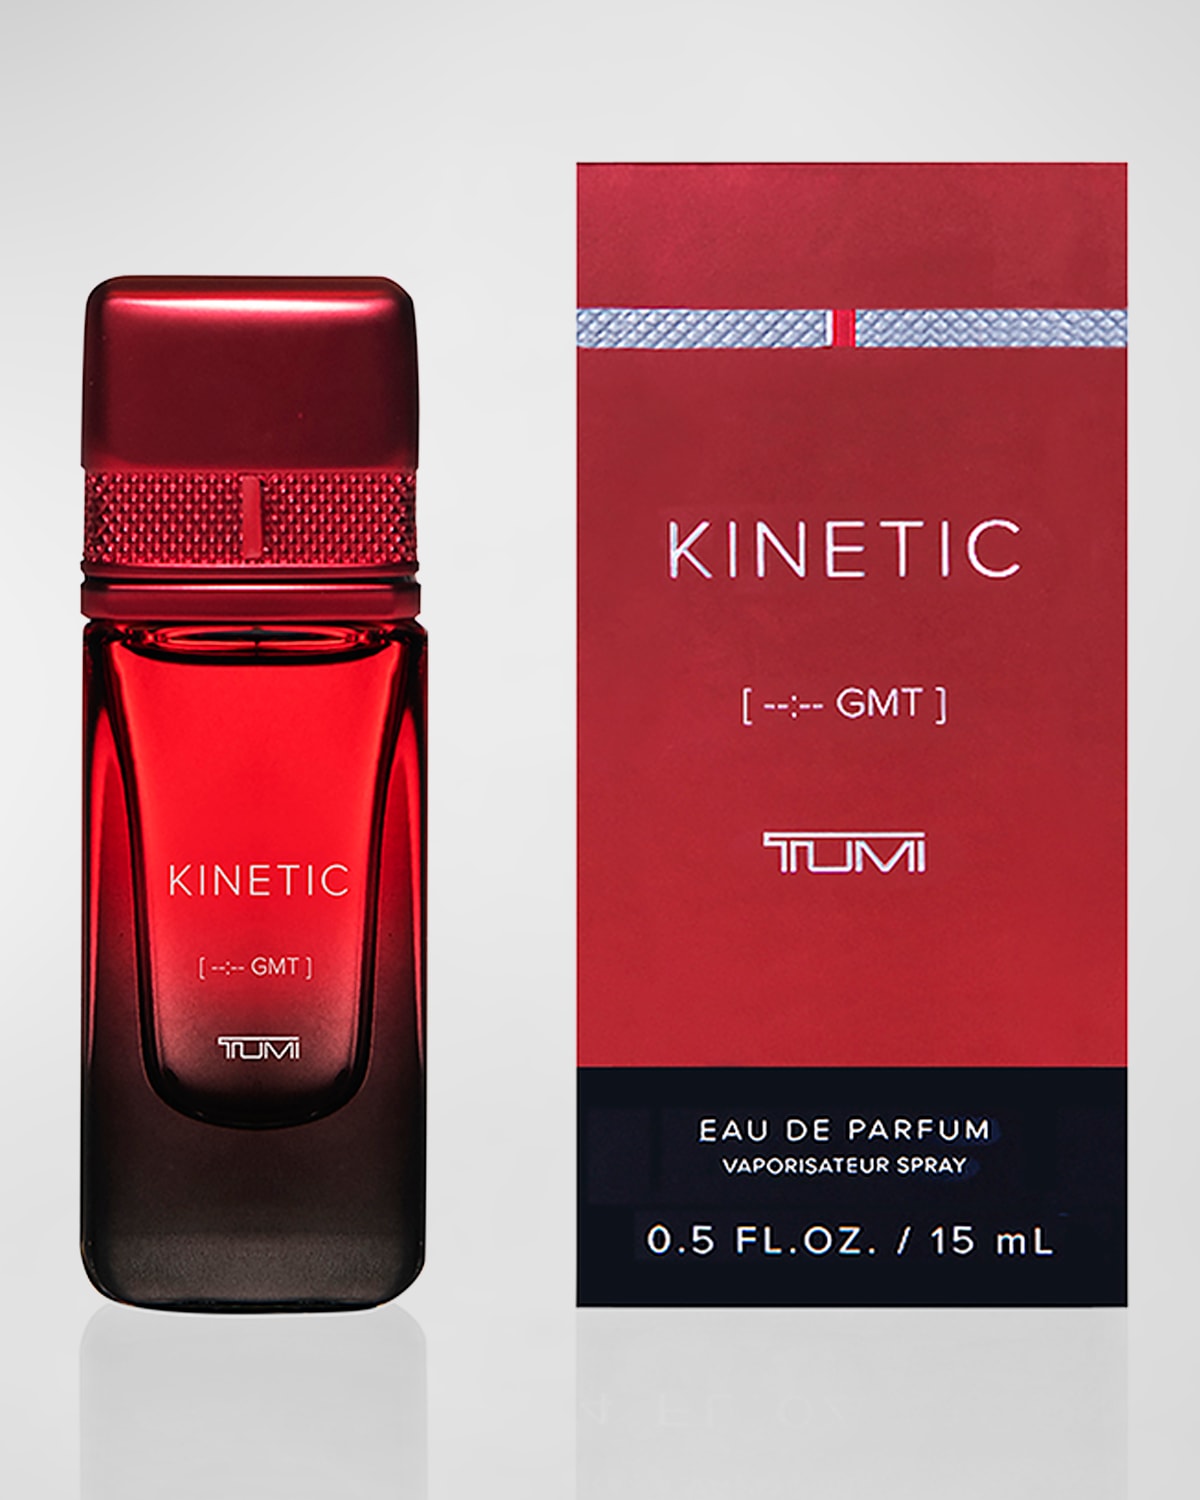 Kinetic [-:- GMT] TUMI for Men Eau de Parfum, 0.5 oz.